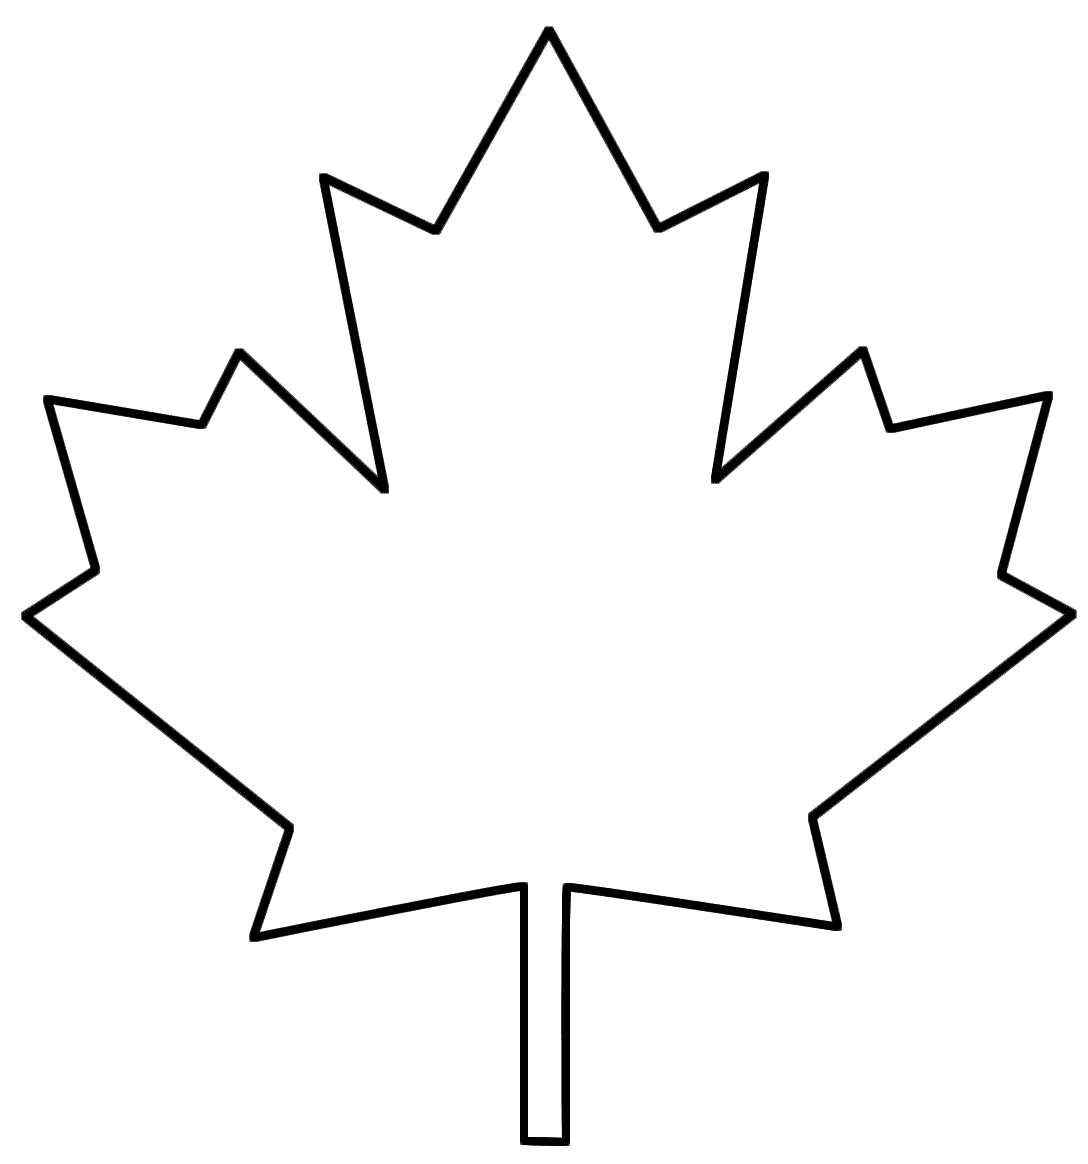 Clip Art: Maple Leaves